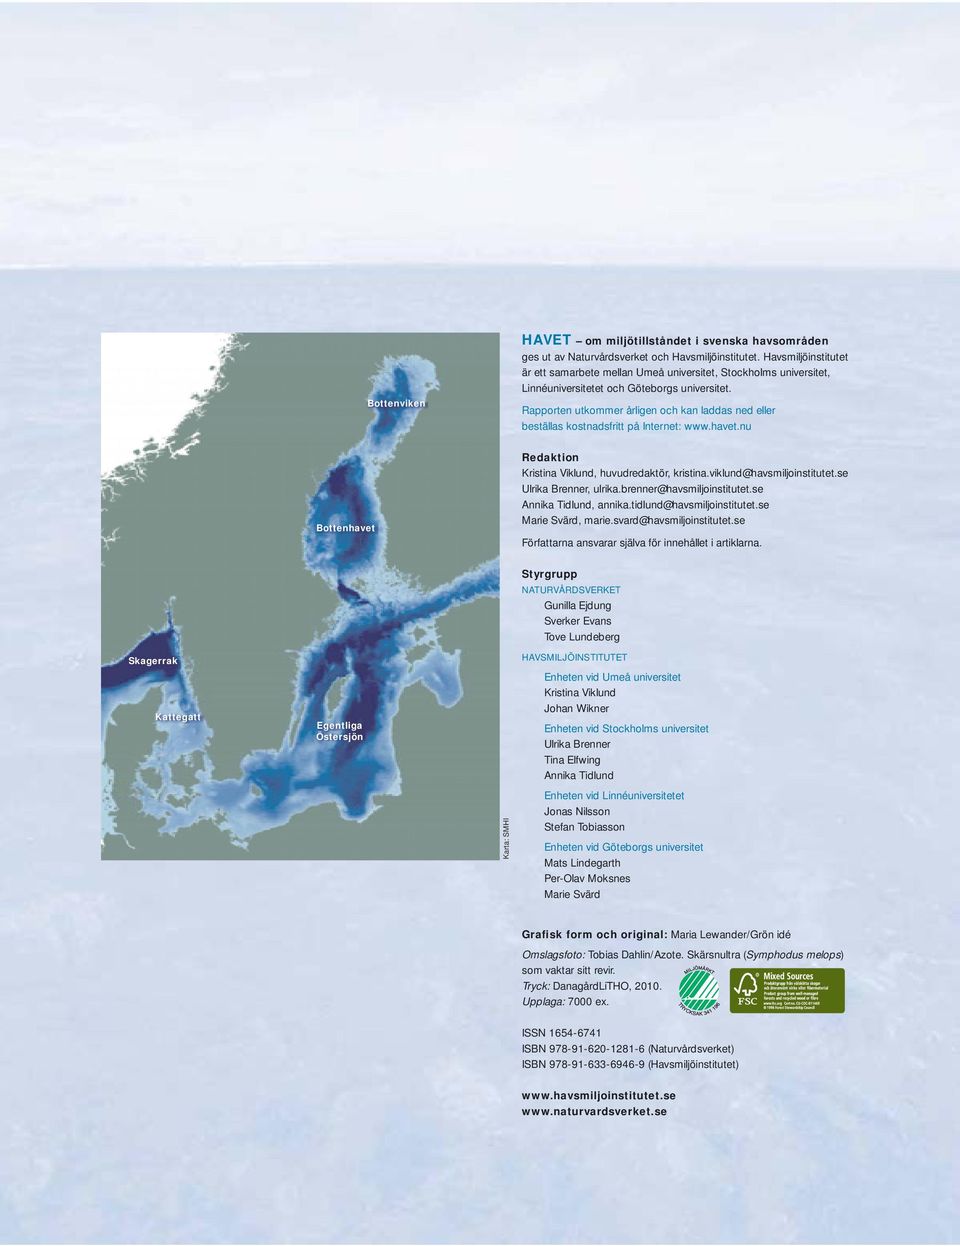 Rapporten utkommer årligen och kan laddas ned eller beställas kostnadsfritt på Internet: www.havet.nu Redaktion Kristina Viklund, huvudredaktör, kristina.viklund@havsmiljoinstitutet.